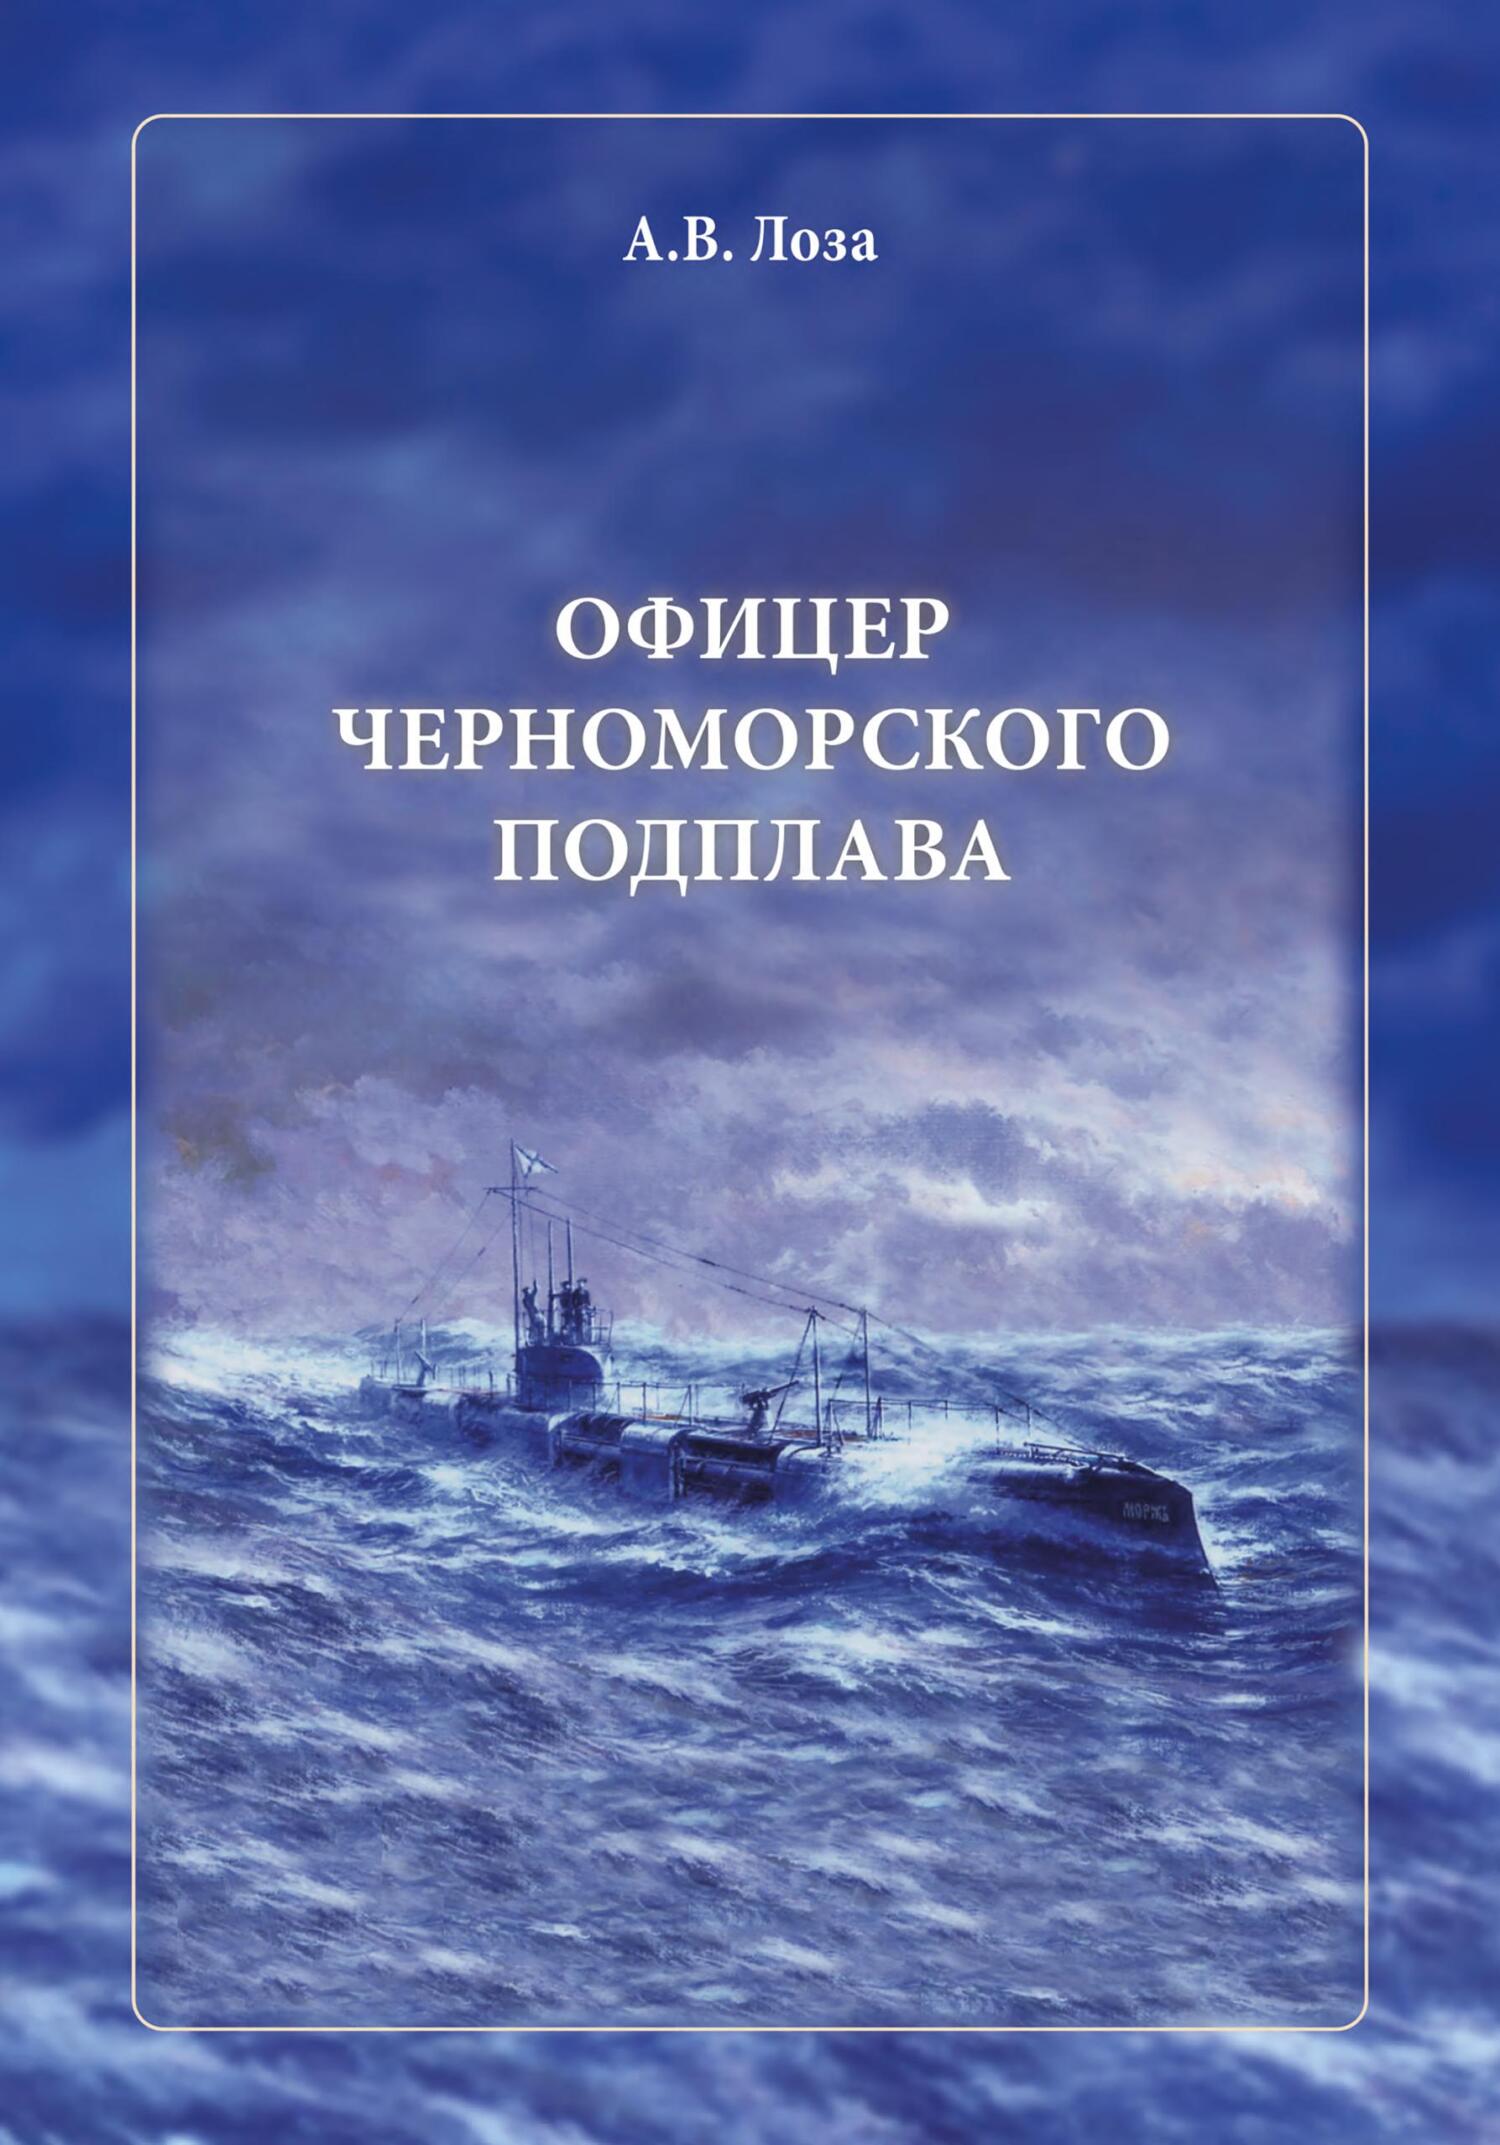 Офицер черноморского подплава - Александр Витальевич Лоза